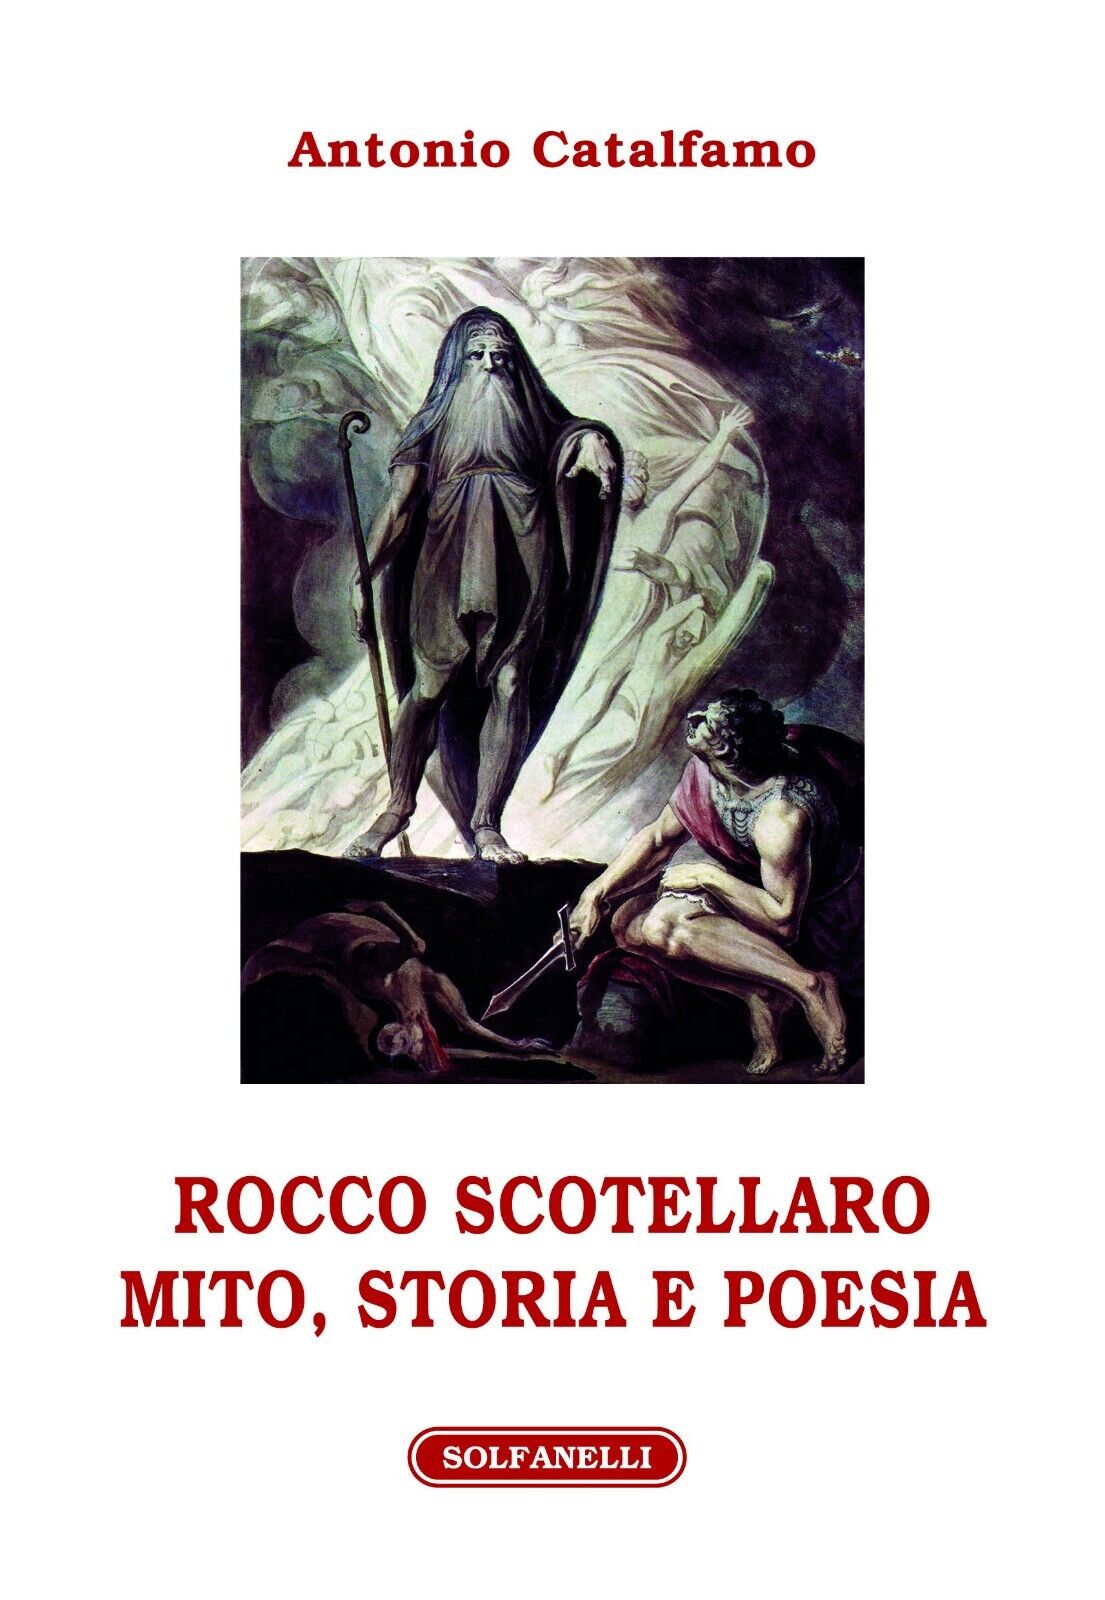 Rocco Scotellaro. Mito, storia e poesia di Antonio Catalfamo, 2016, Solfanell